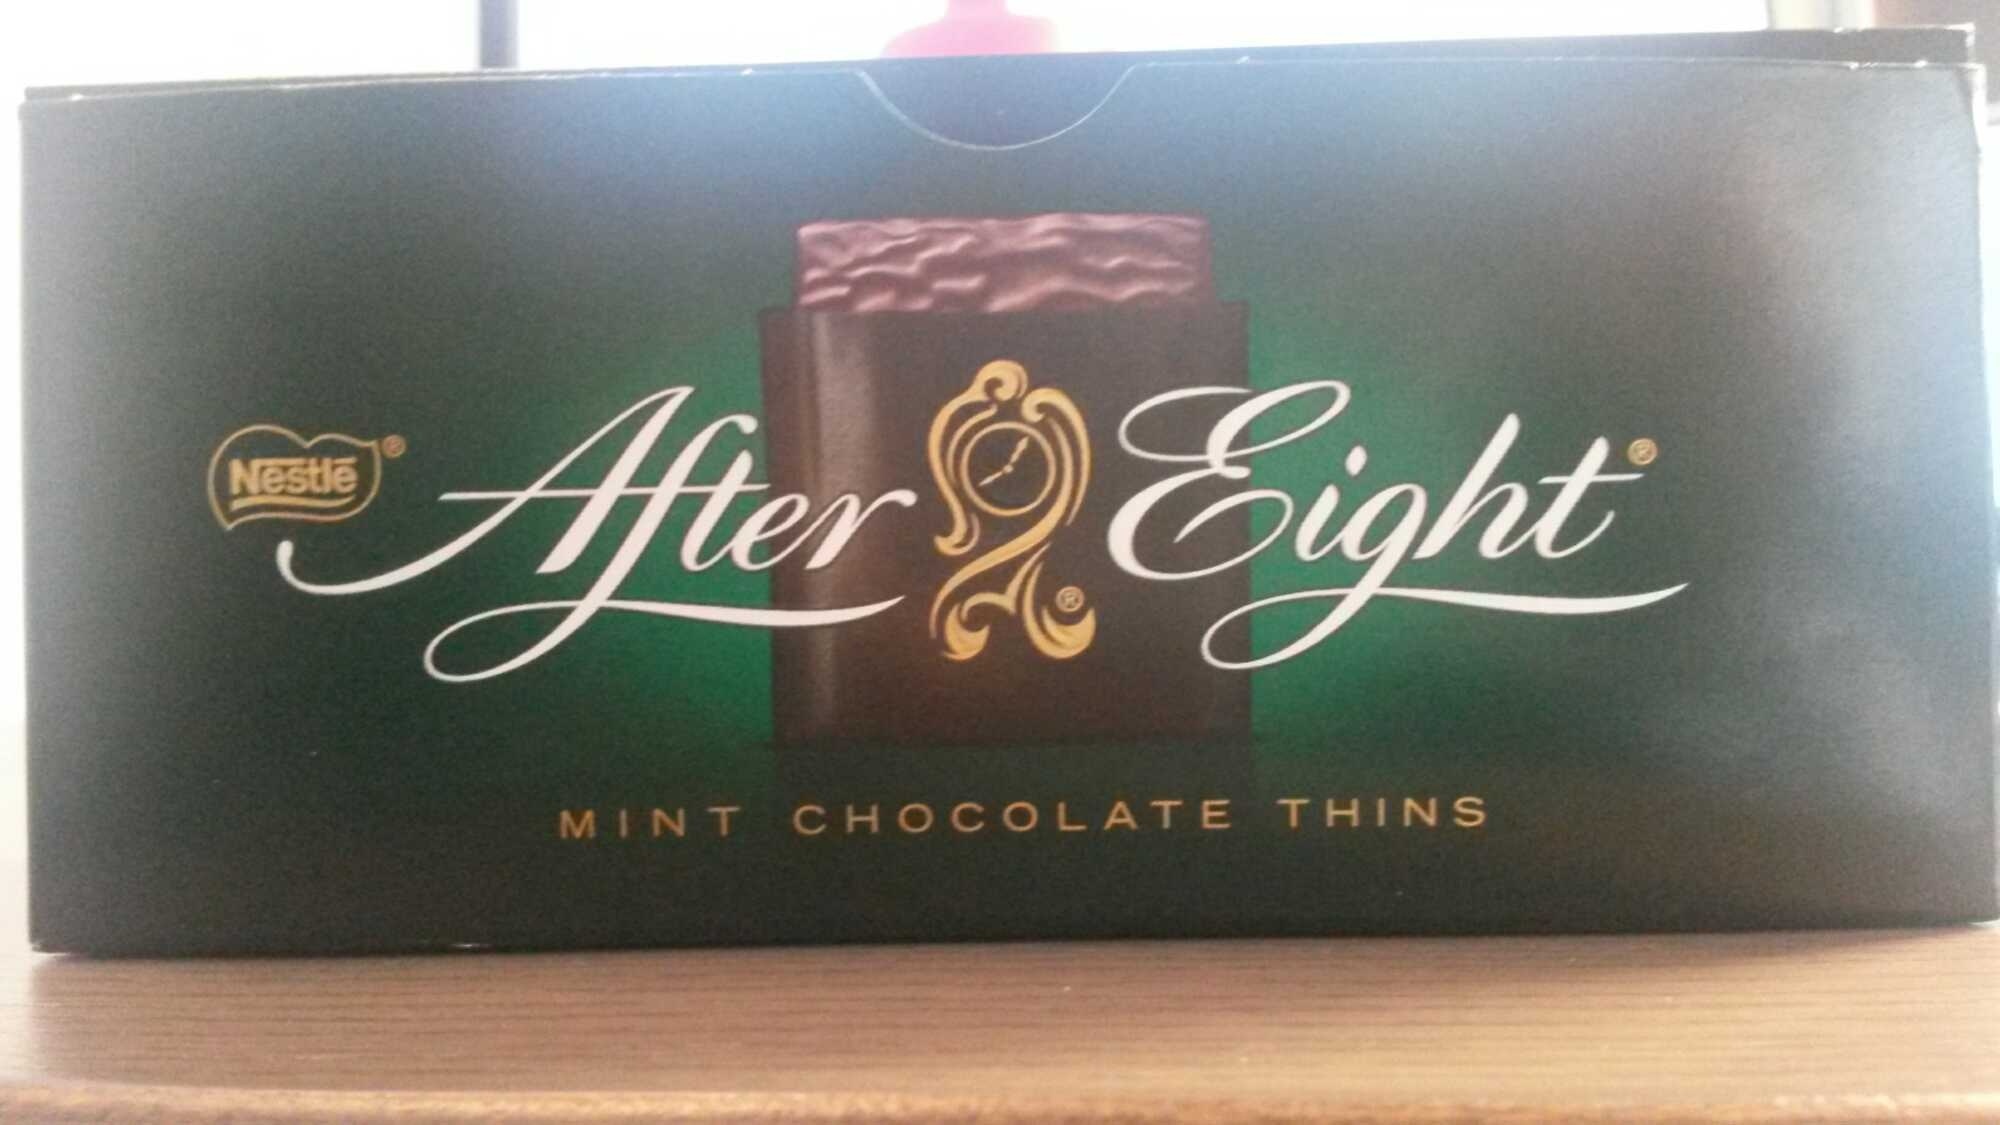 Mint chocolate thins - Producte - en